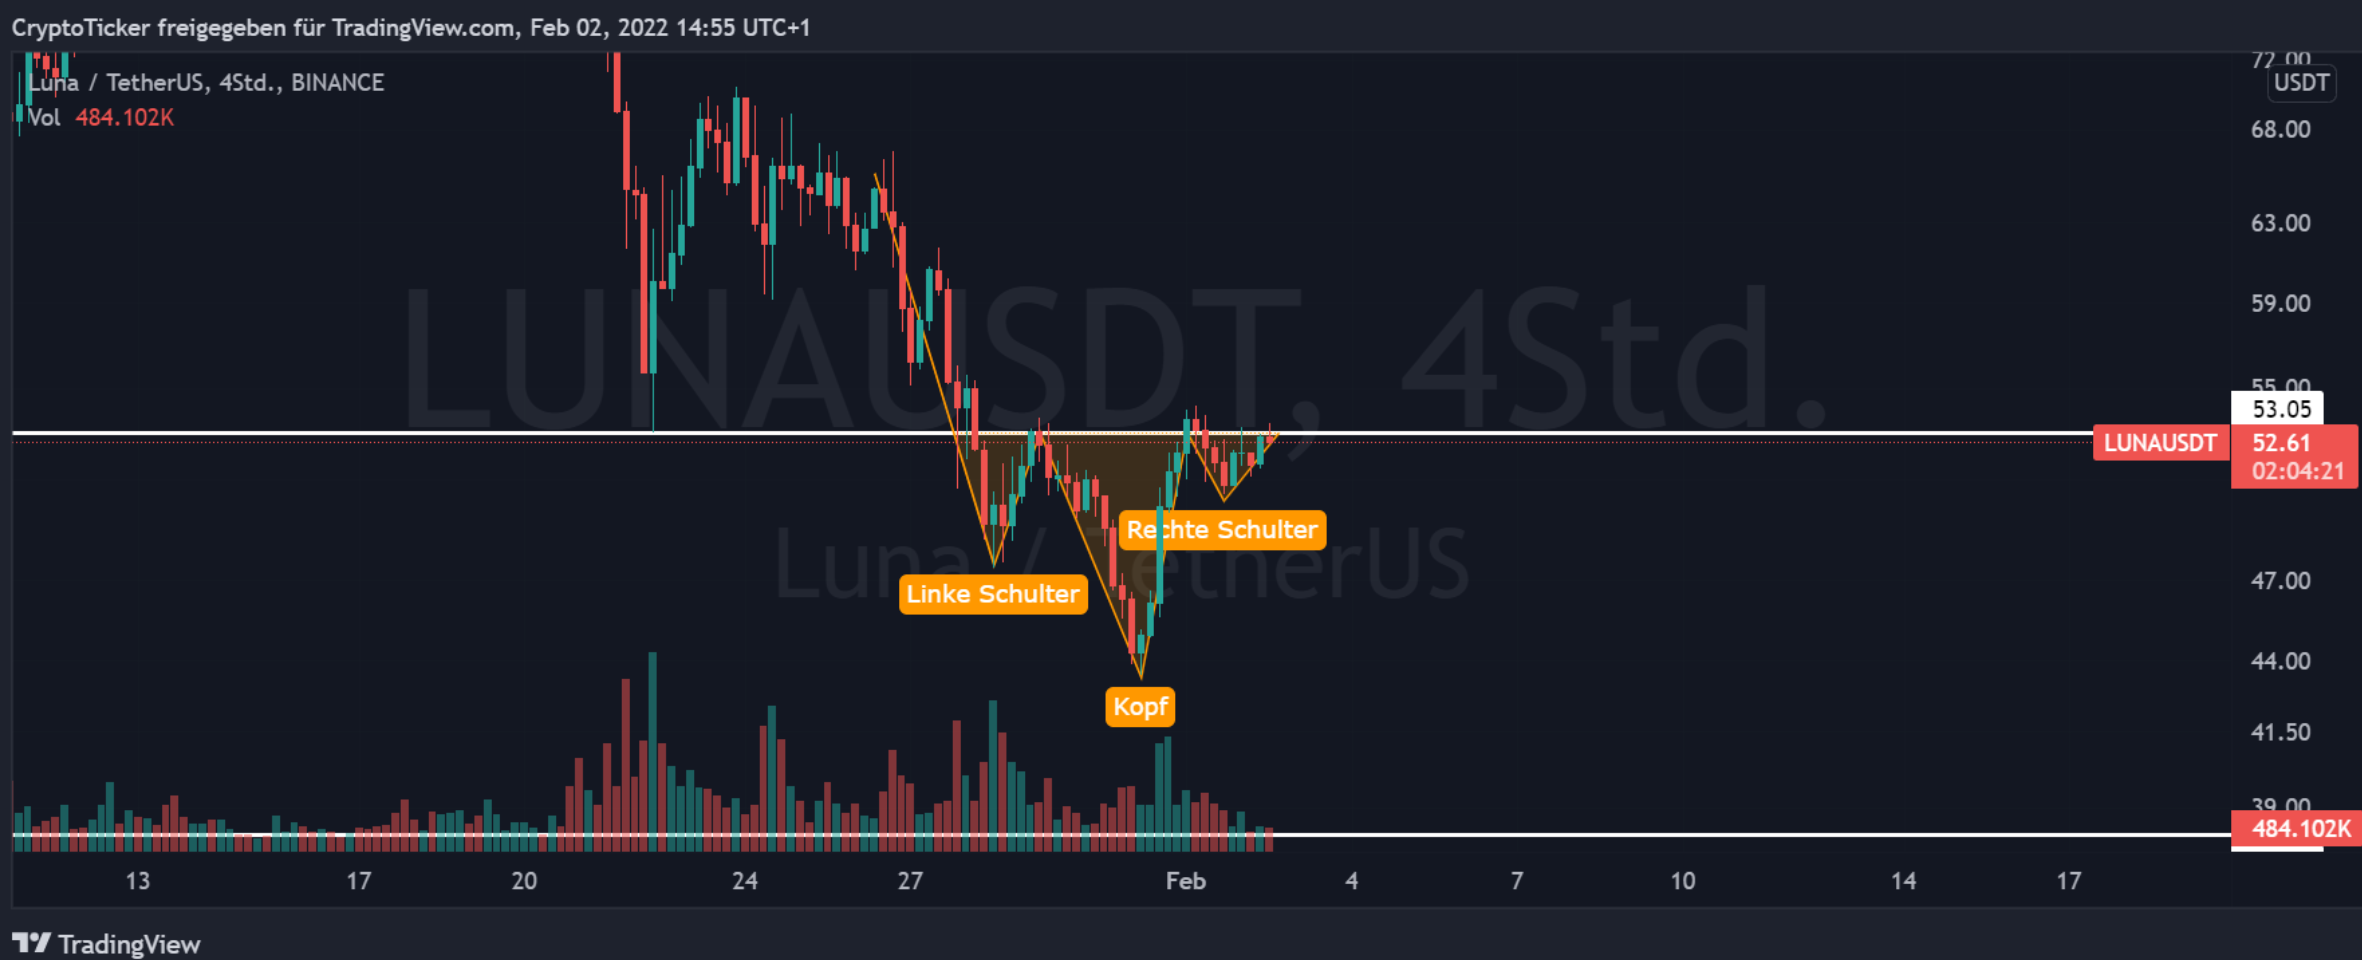 LUNA/USDT 4-hours chart showing the inverted head & shoulder formation in LUNA price